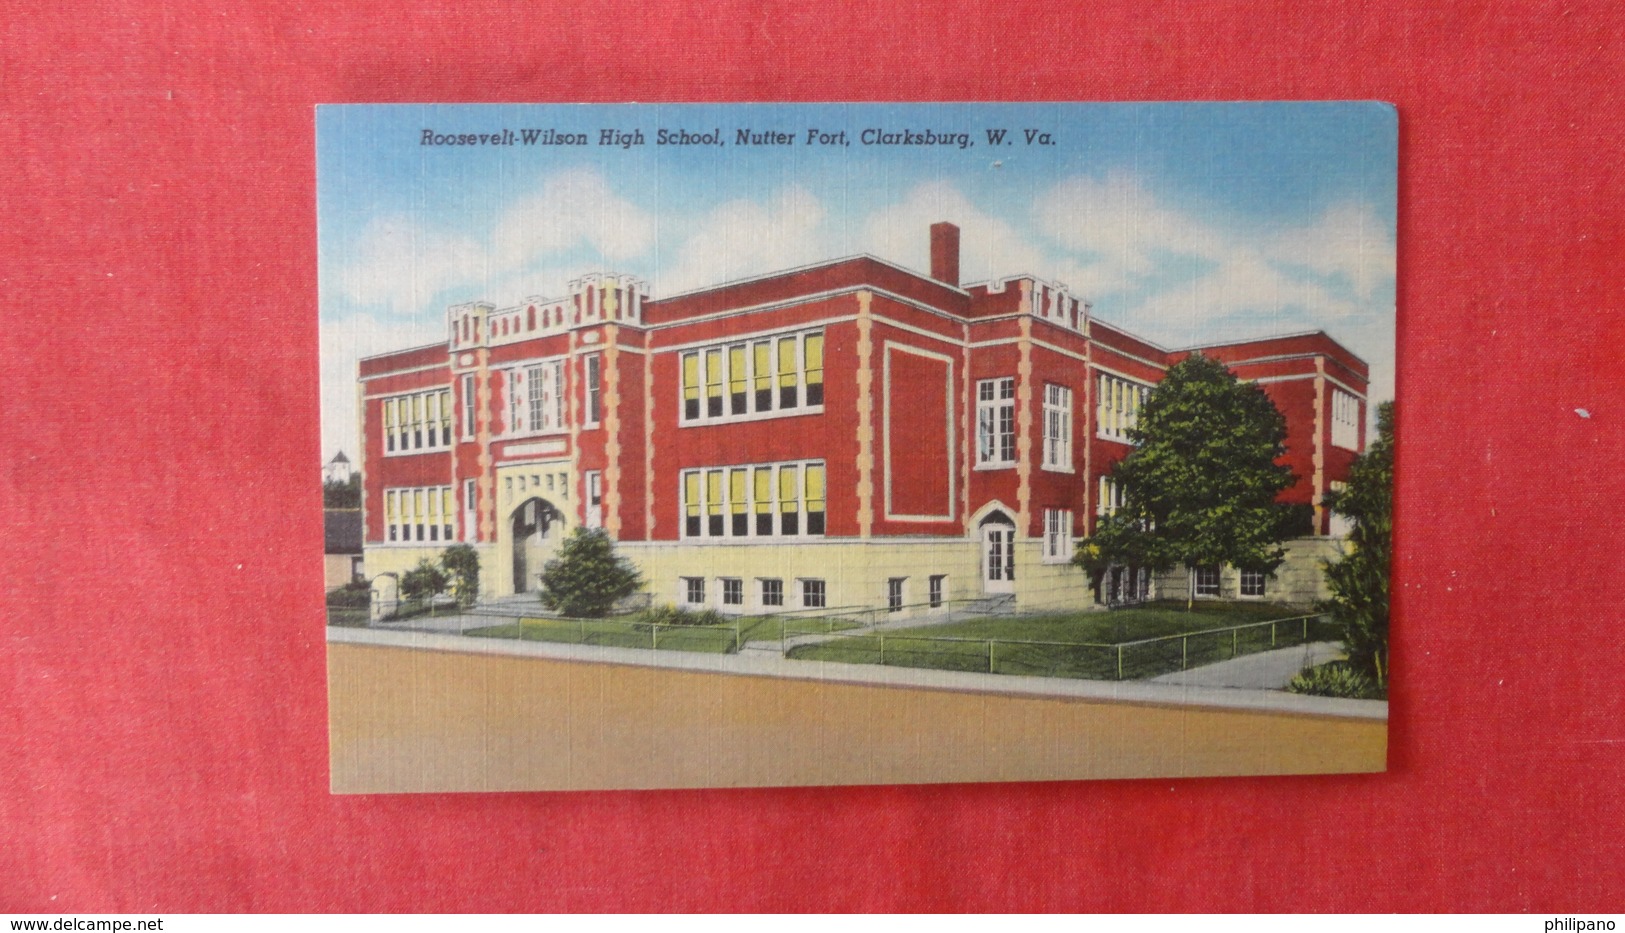 Roosevelt Wilson High School Nutter Fort    West Virginia > Clarksburg   -----ref 2554 - Clarksburg